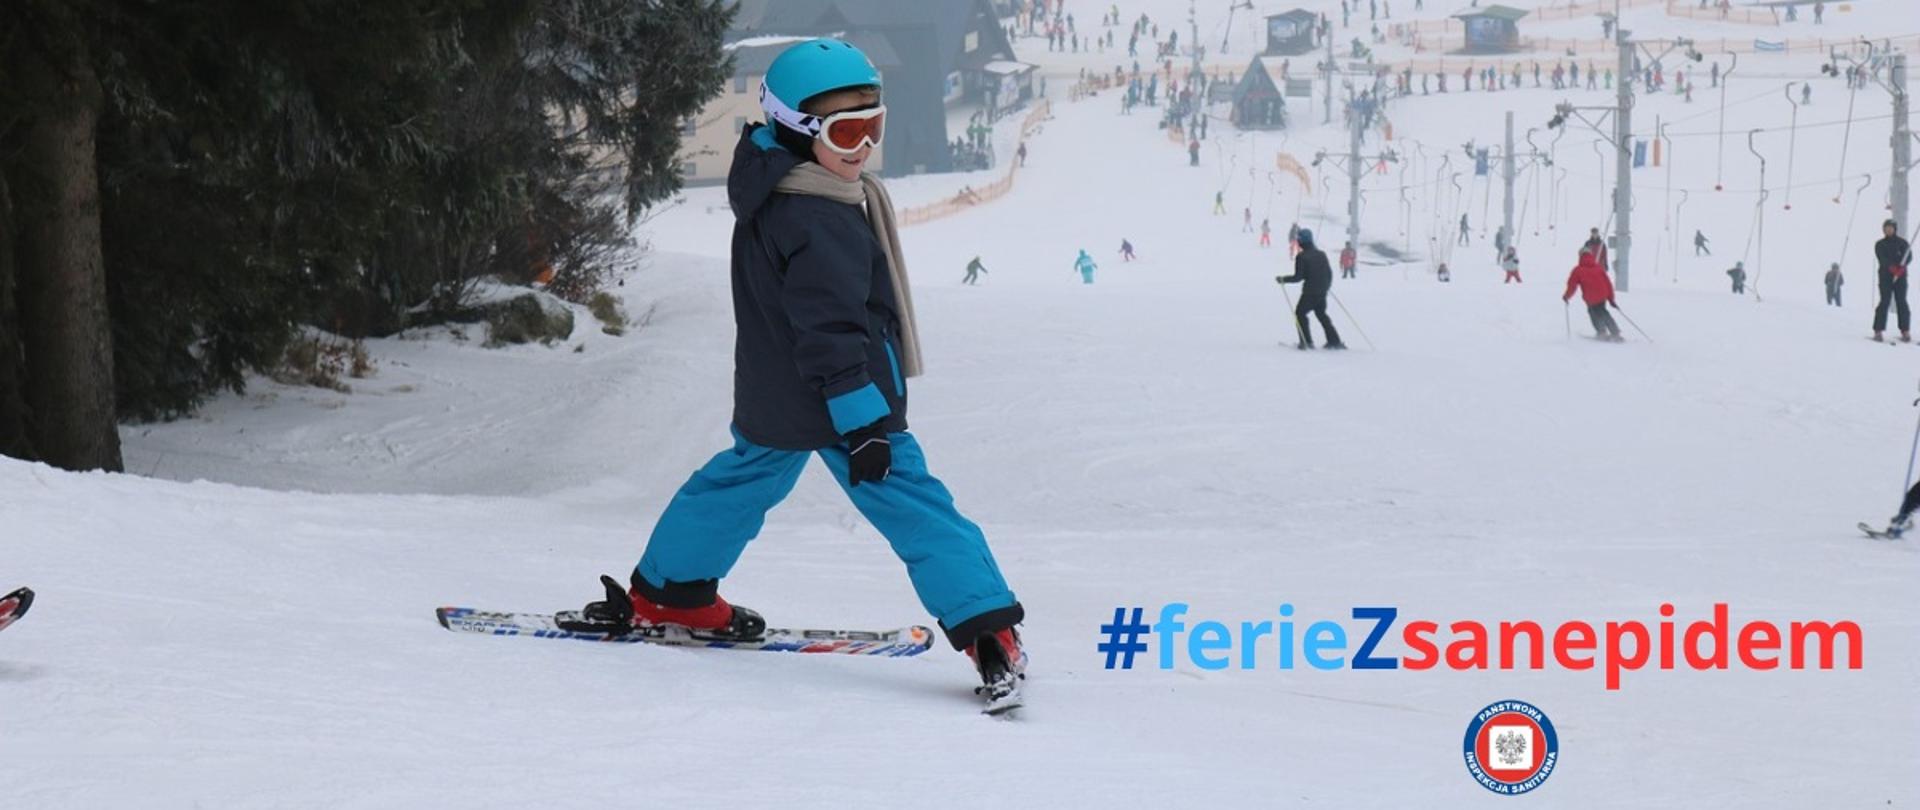 na szczycie stoku narciarskiego dziecko na nartach zwrócone w stronę odbiorcy zdjęcia, obok napis #feriezsanepidem